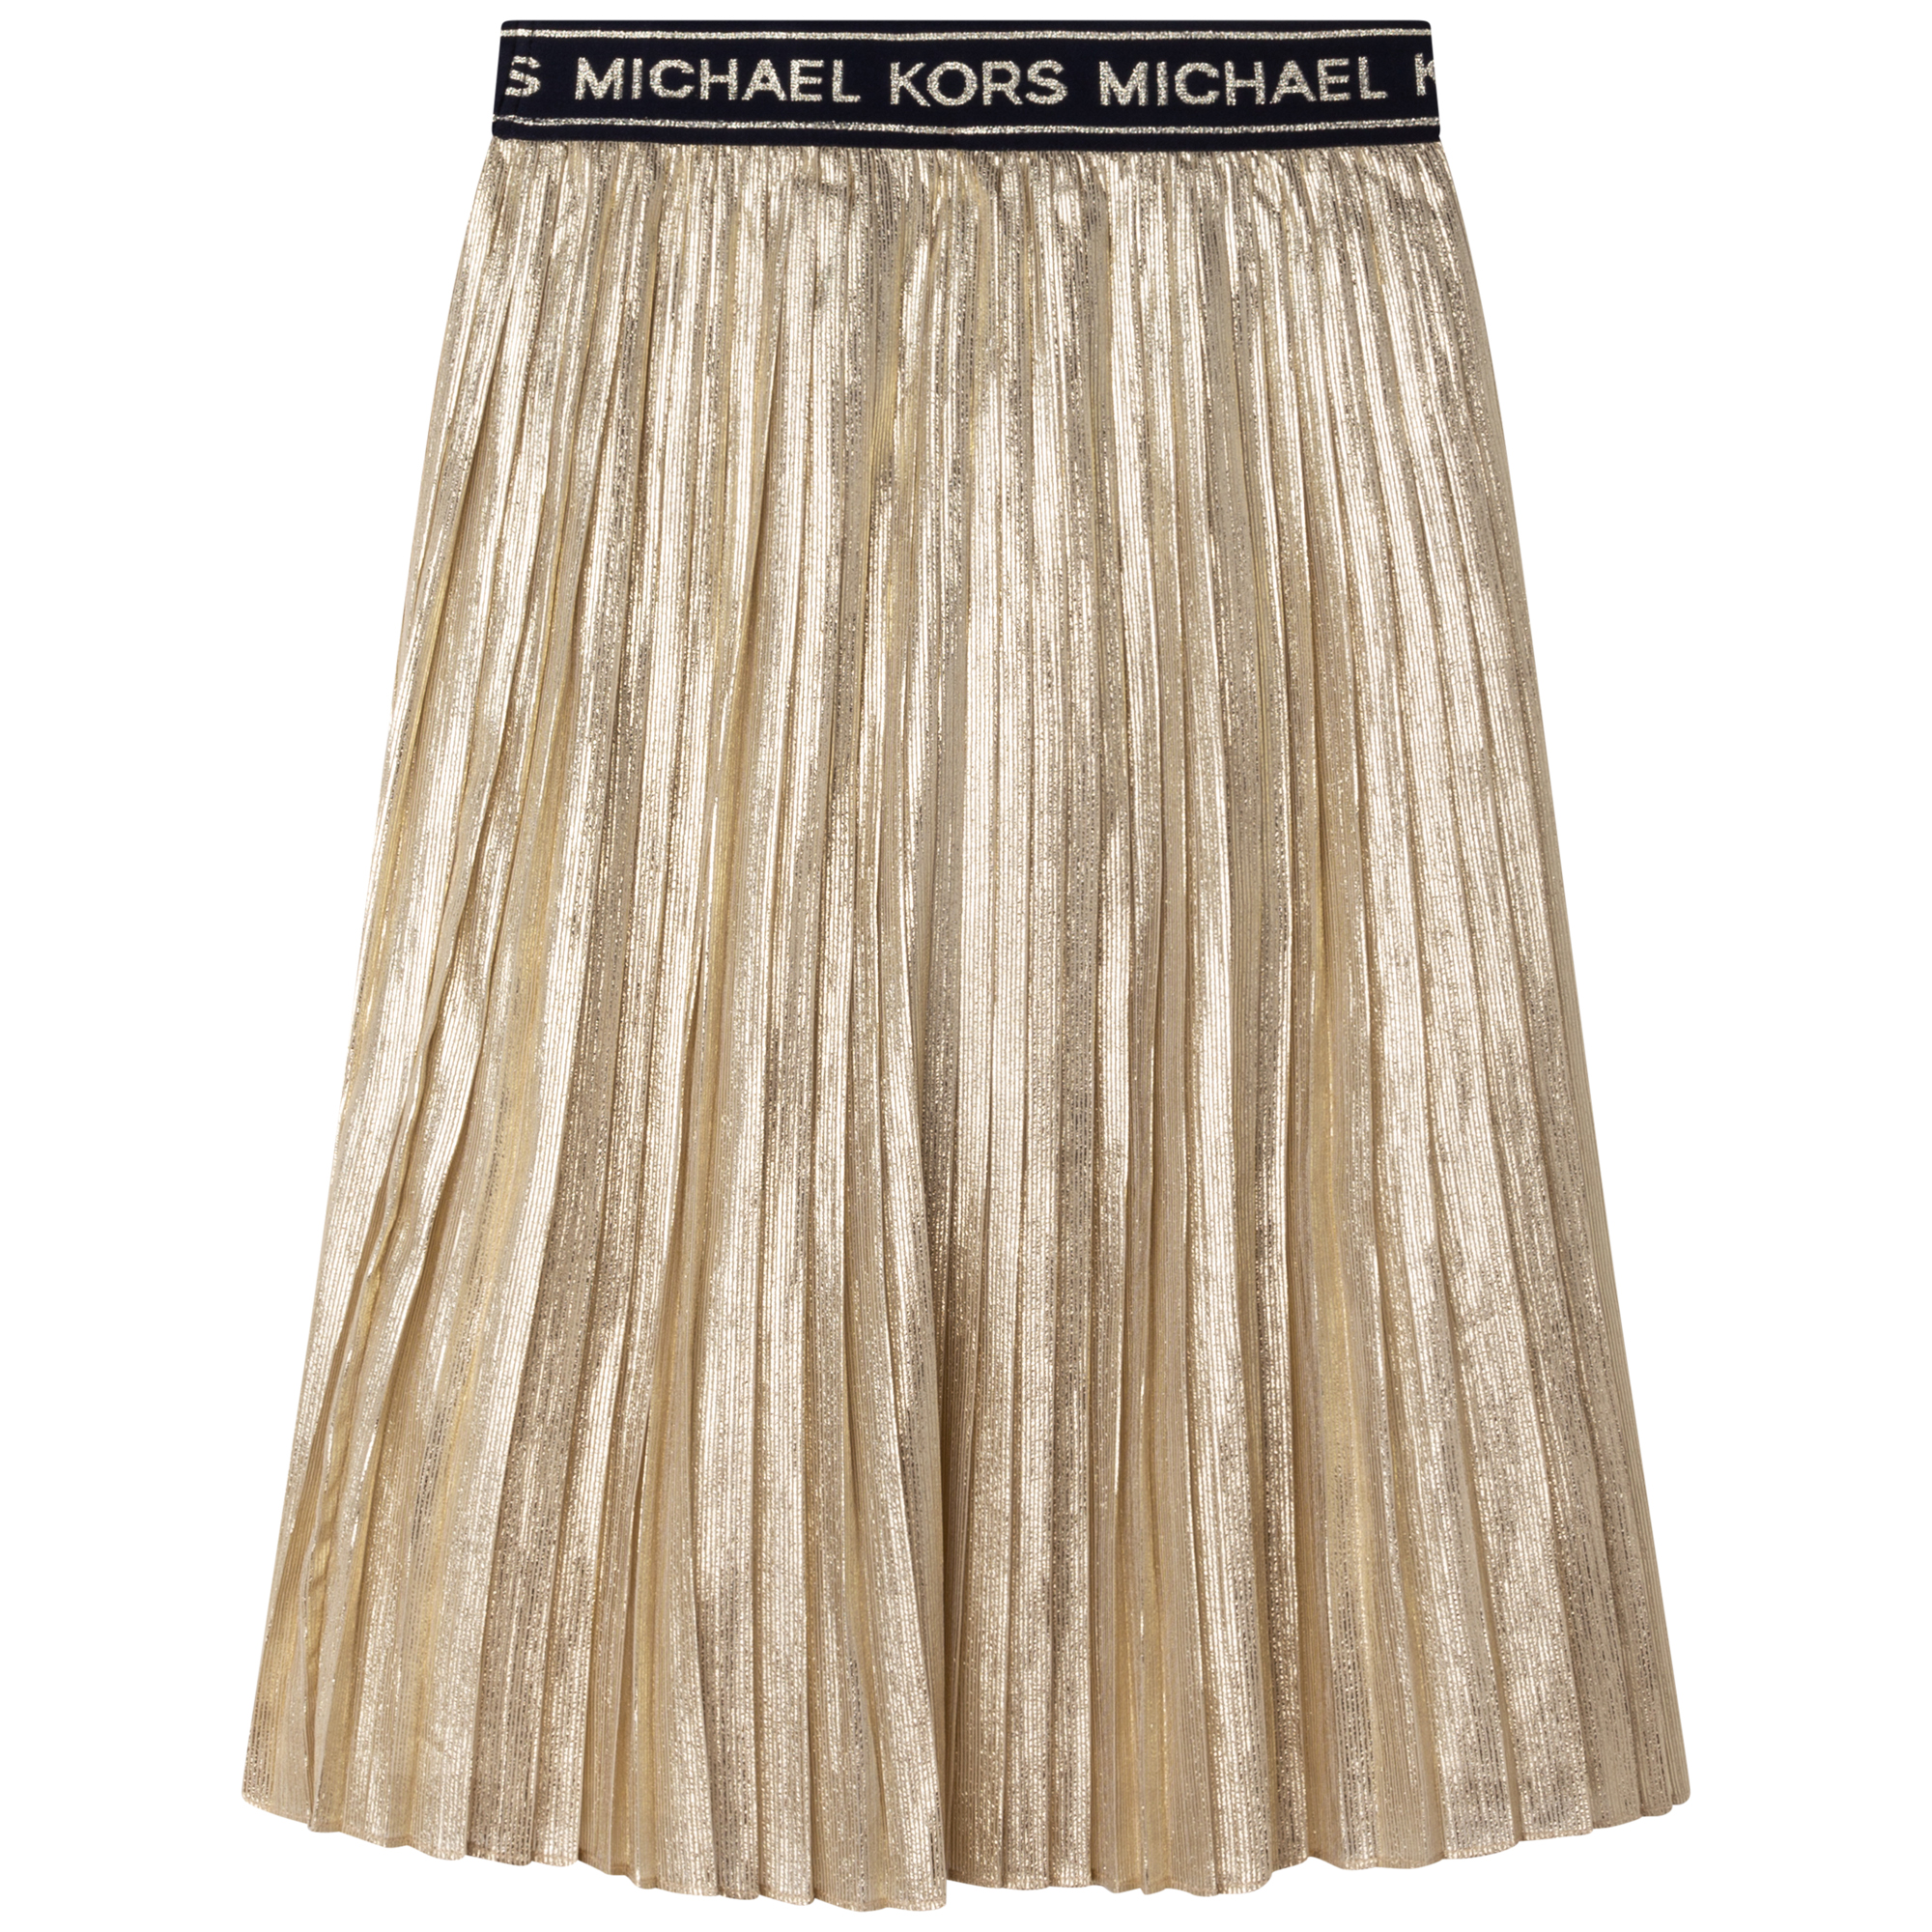 Pleated Long Skirt MICHAEL KORS for GIRL